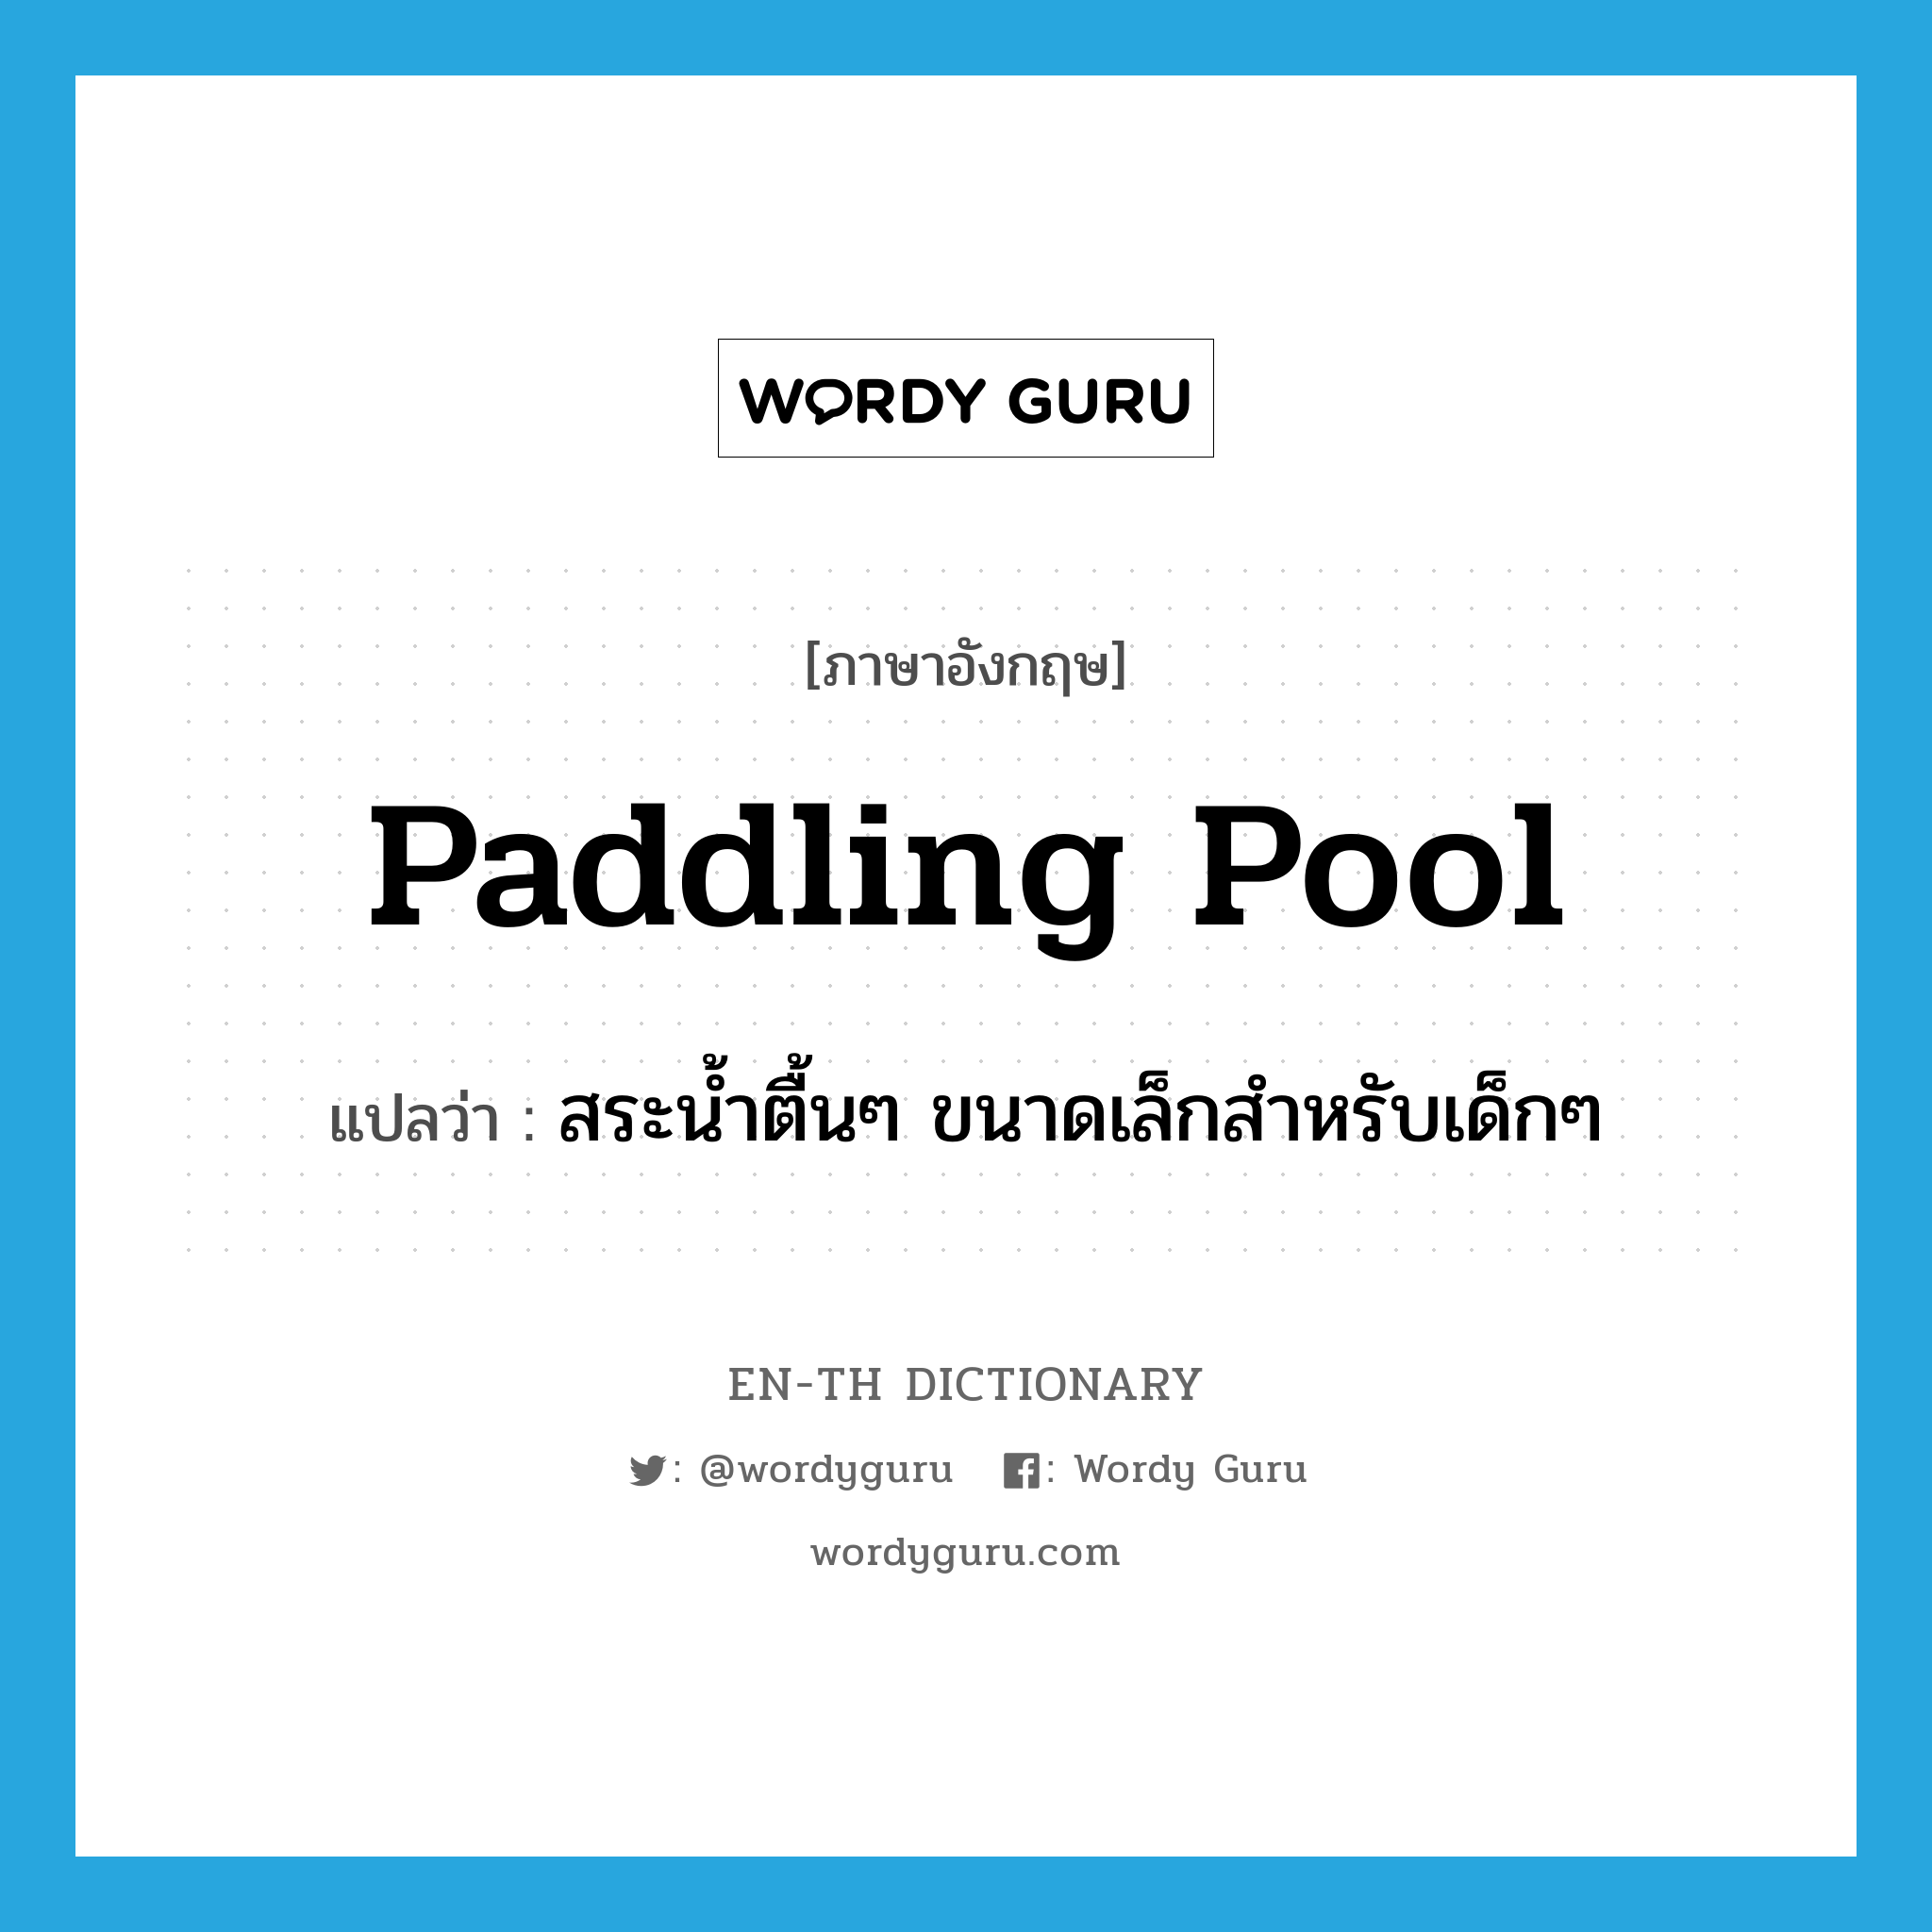 paddling pool แปลว่า?, คำศัพท์ภาษาอังกฤษ paddling pool แปลว่า สระน้ำตื้นๆ ขนาดเล็กสำหรับเด็กๆ ประเภท N หมวด N